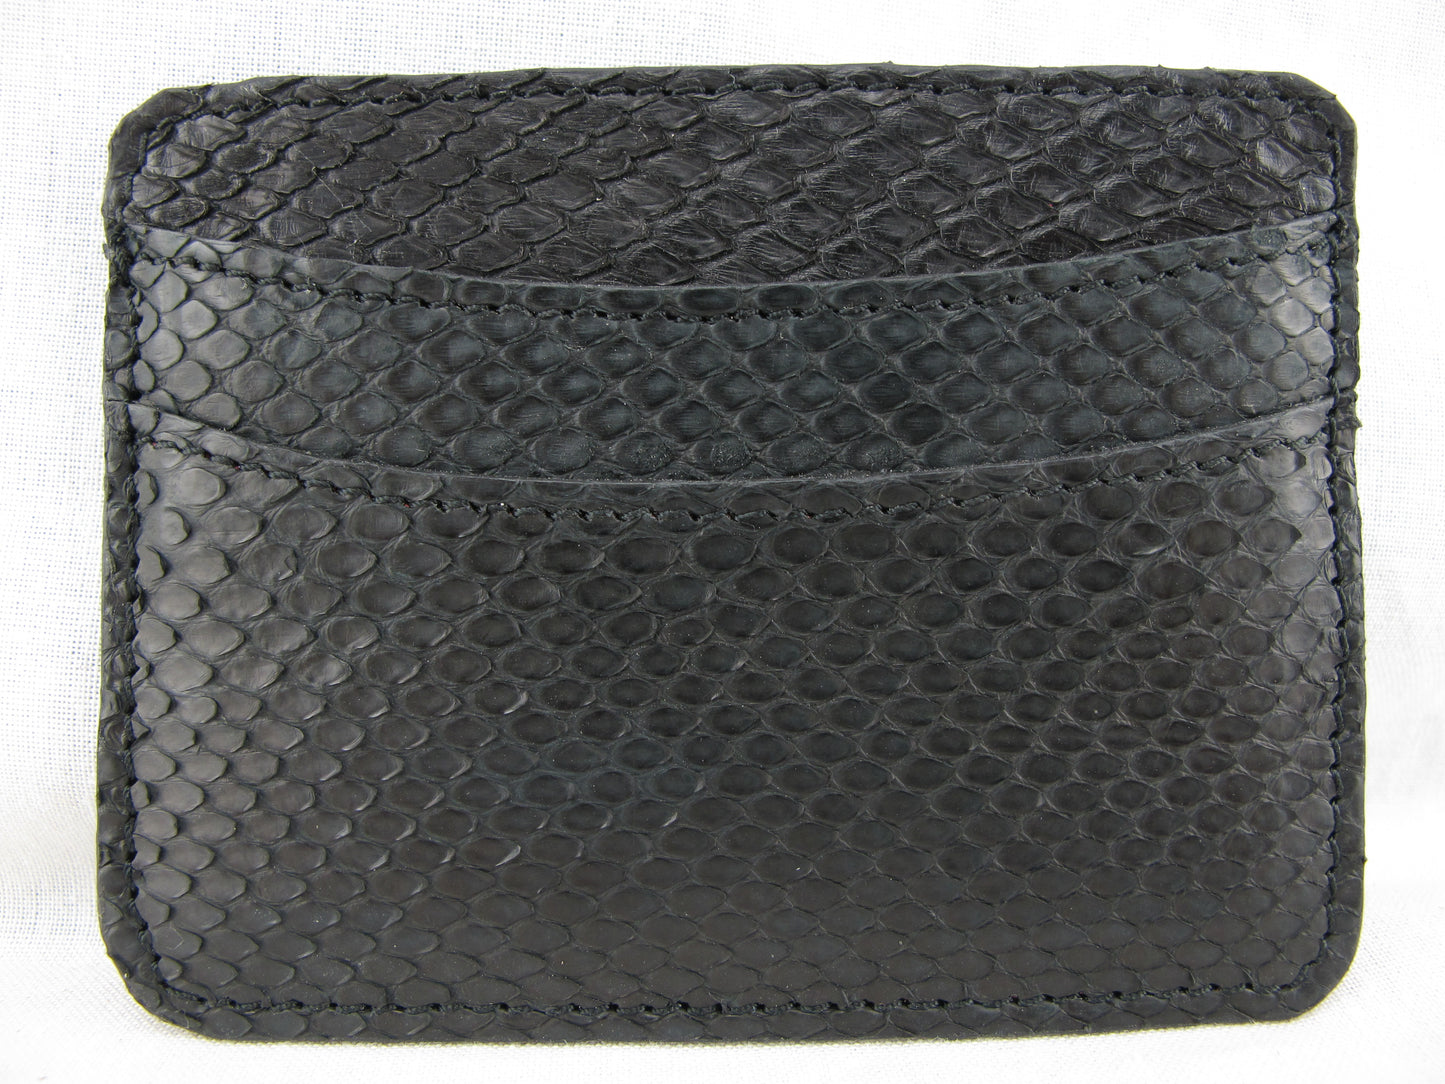 Genuine Python Skin Leather Slim Business & Credit Card Holder Wallet